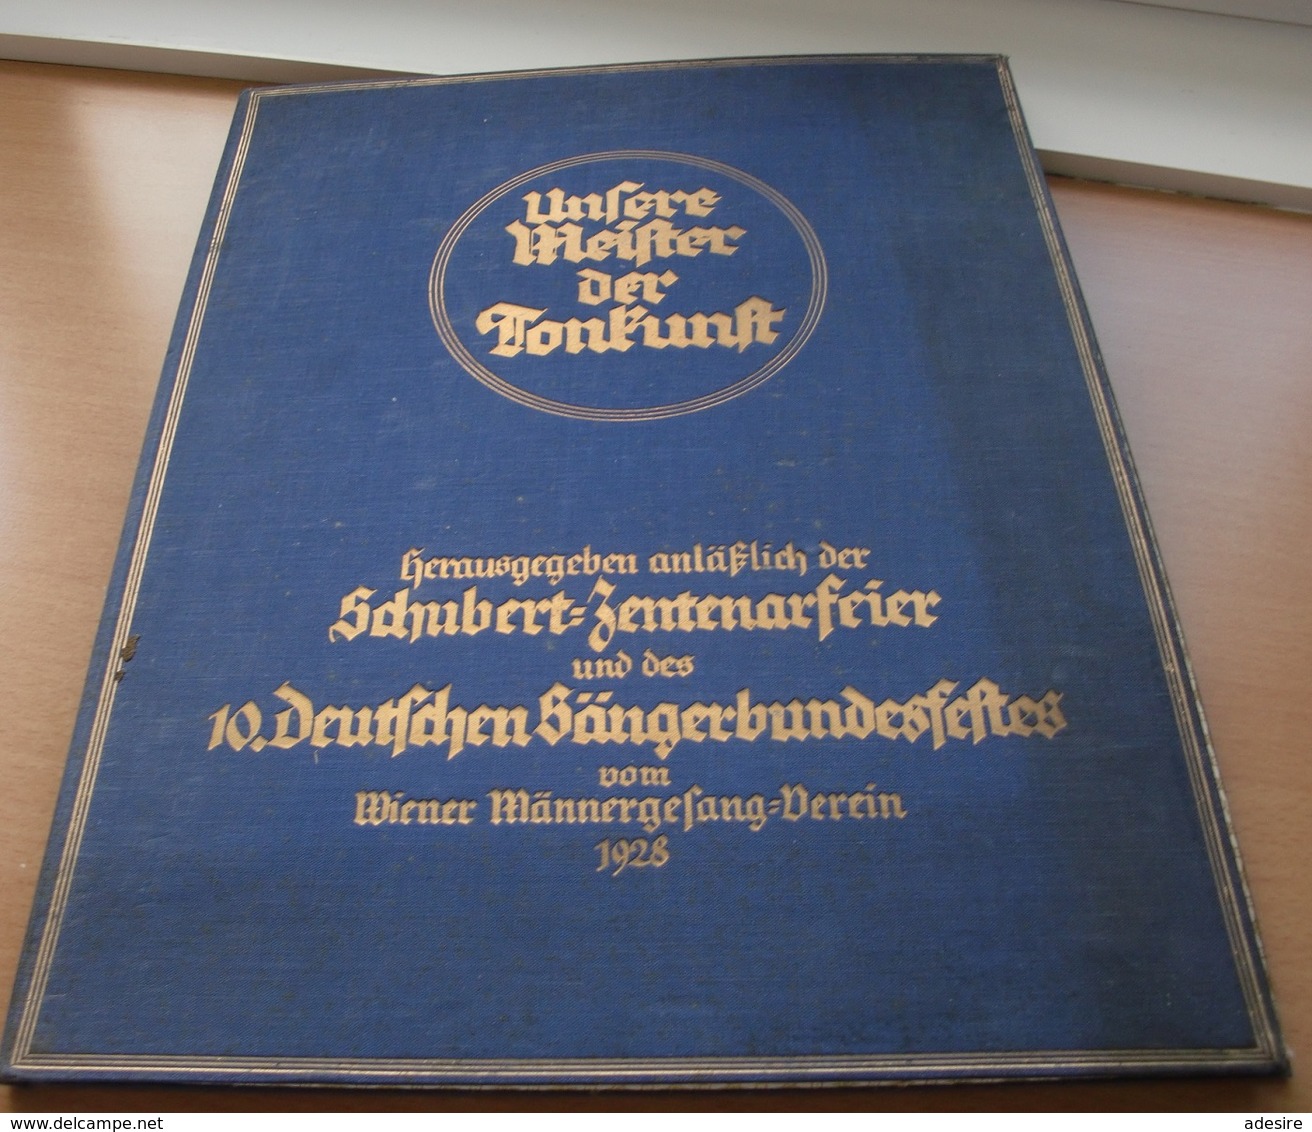 UNSERE MEISTER DER TONKUNST - Große Mappe Herausgegeben 1928 Anläßlich Der SCHUBERT-ZENTENARFEIER U.d. DEUTSCHEN ... - Lithographien